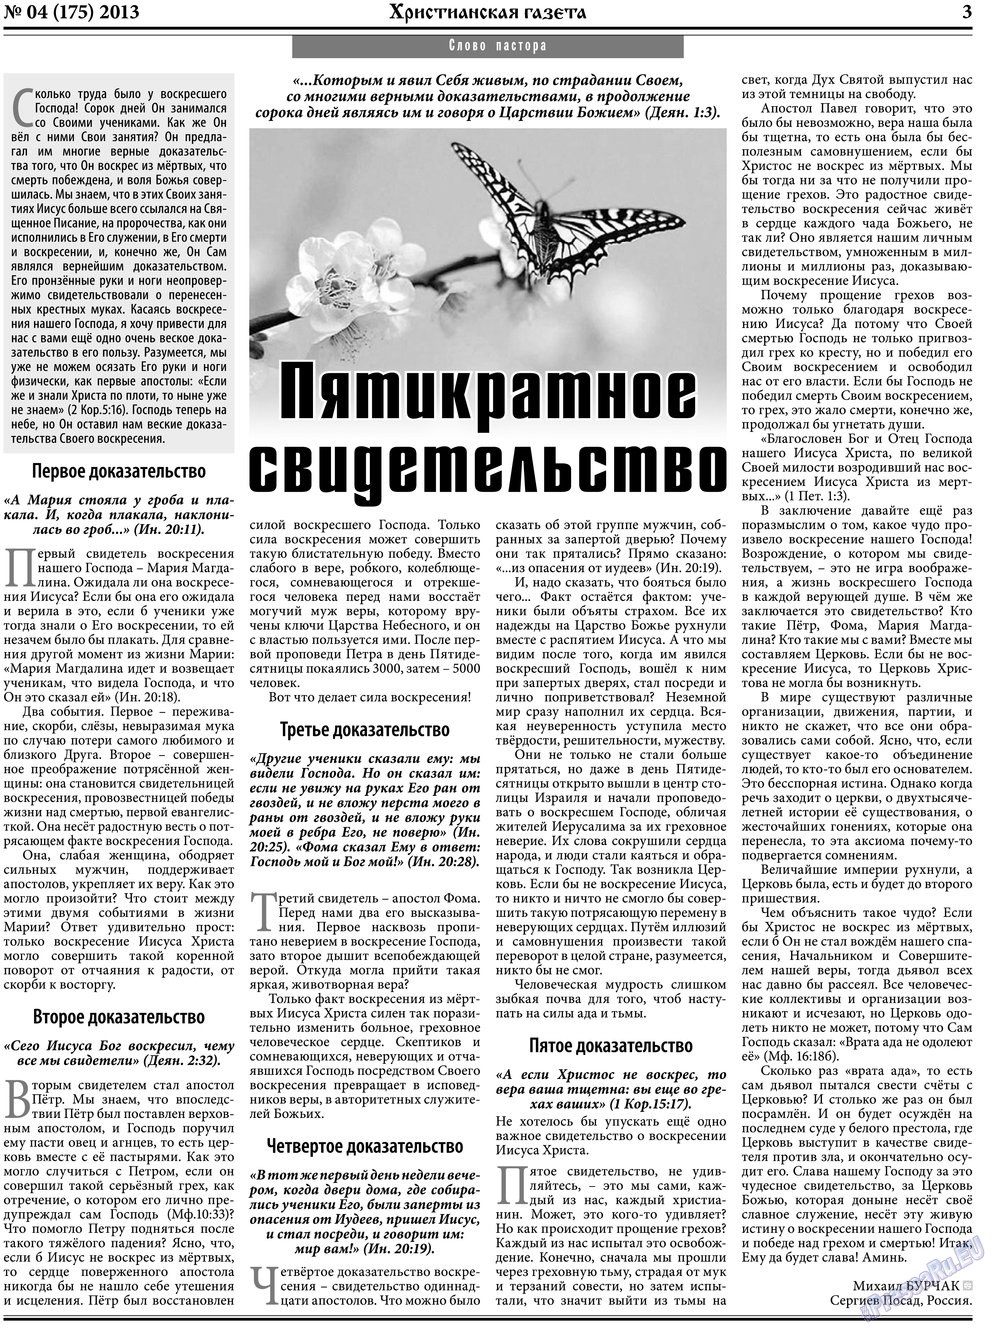 Христианская газета, газета. 2013 №4 стр.3